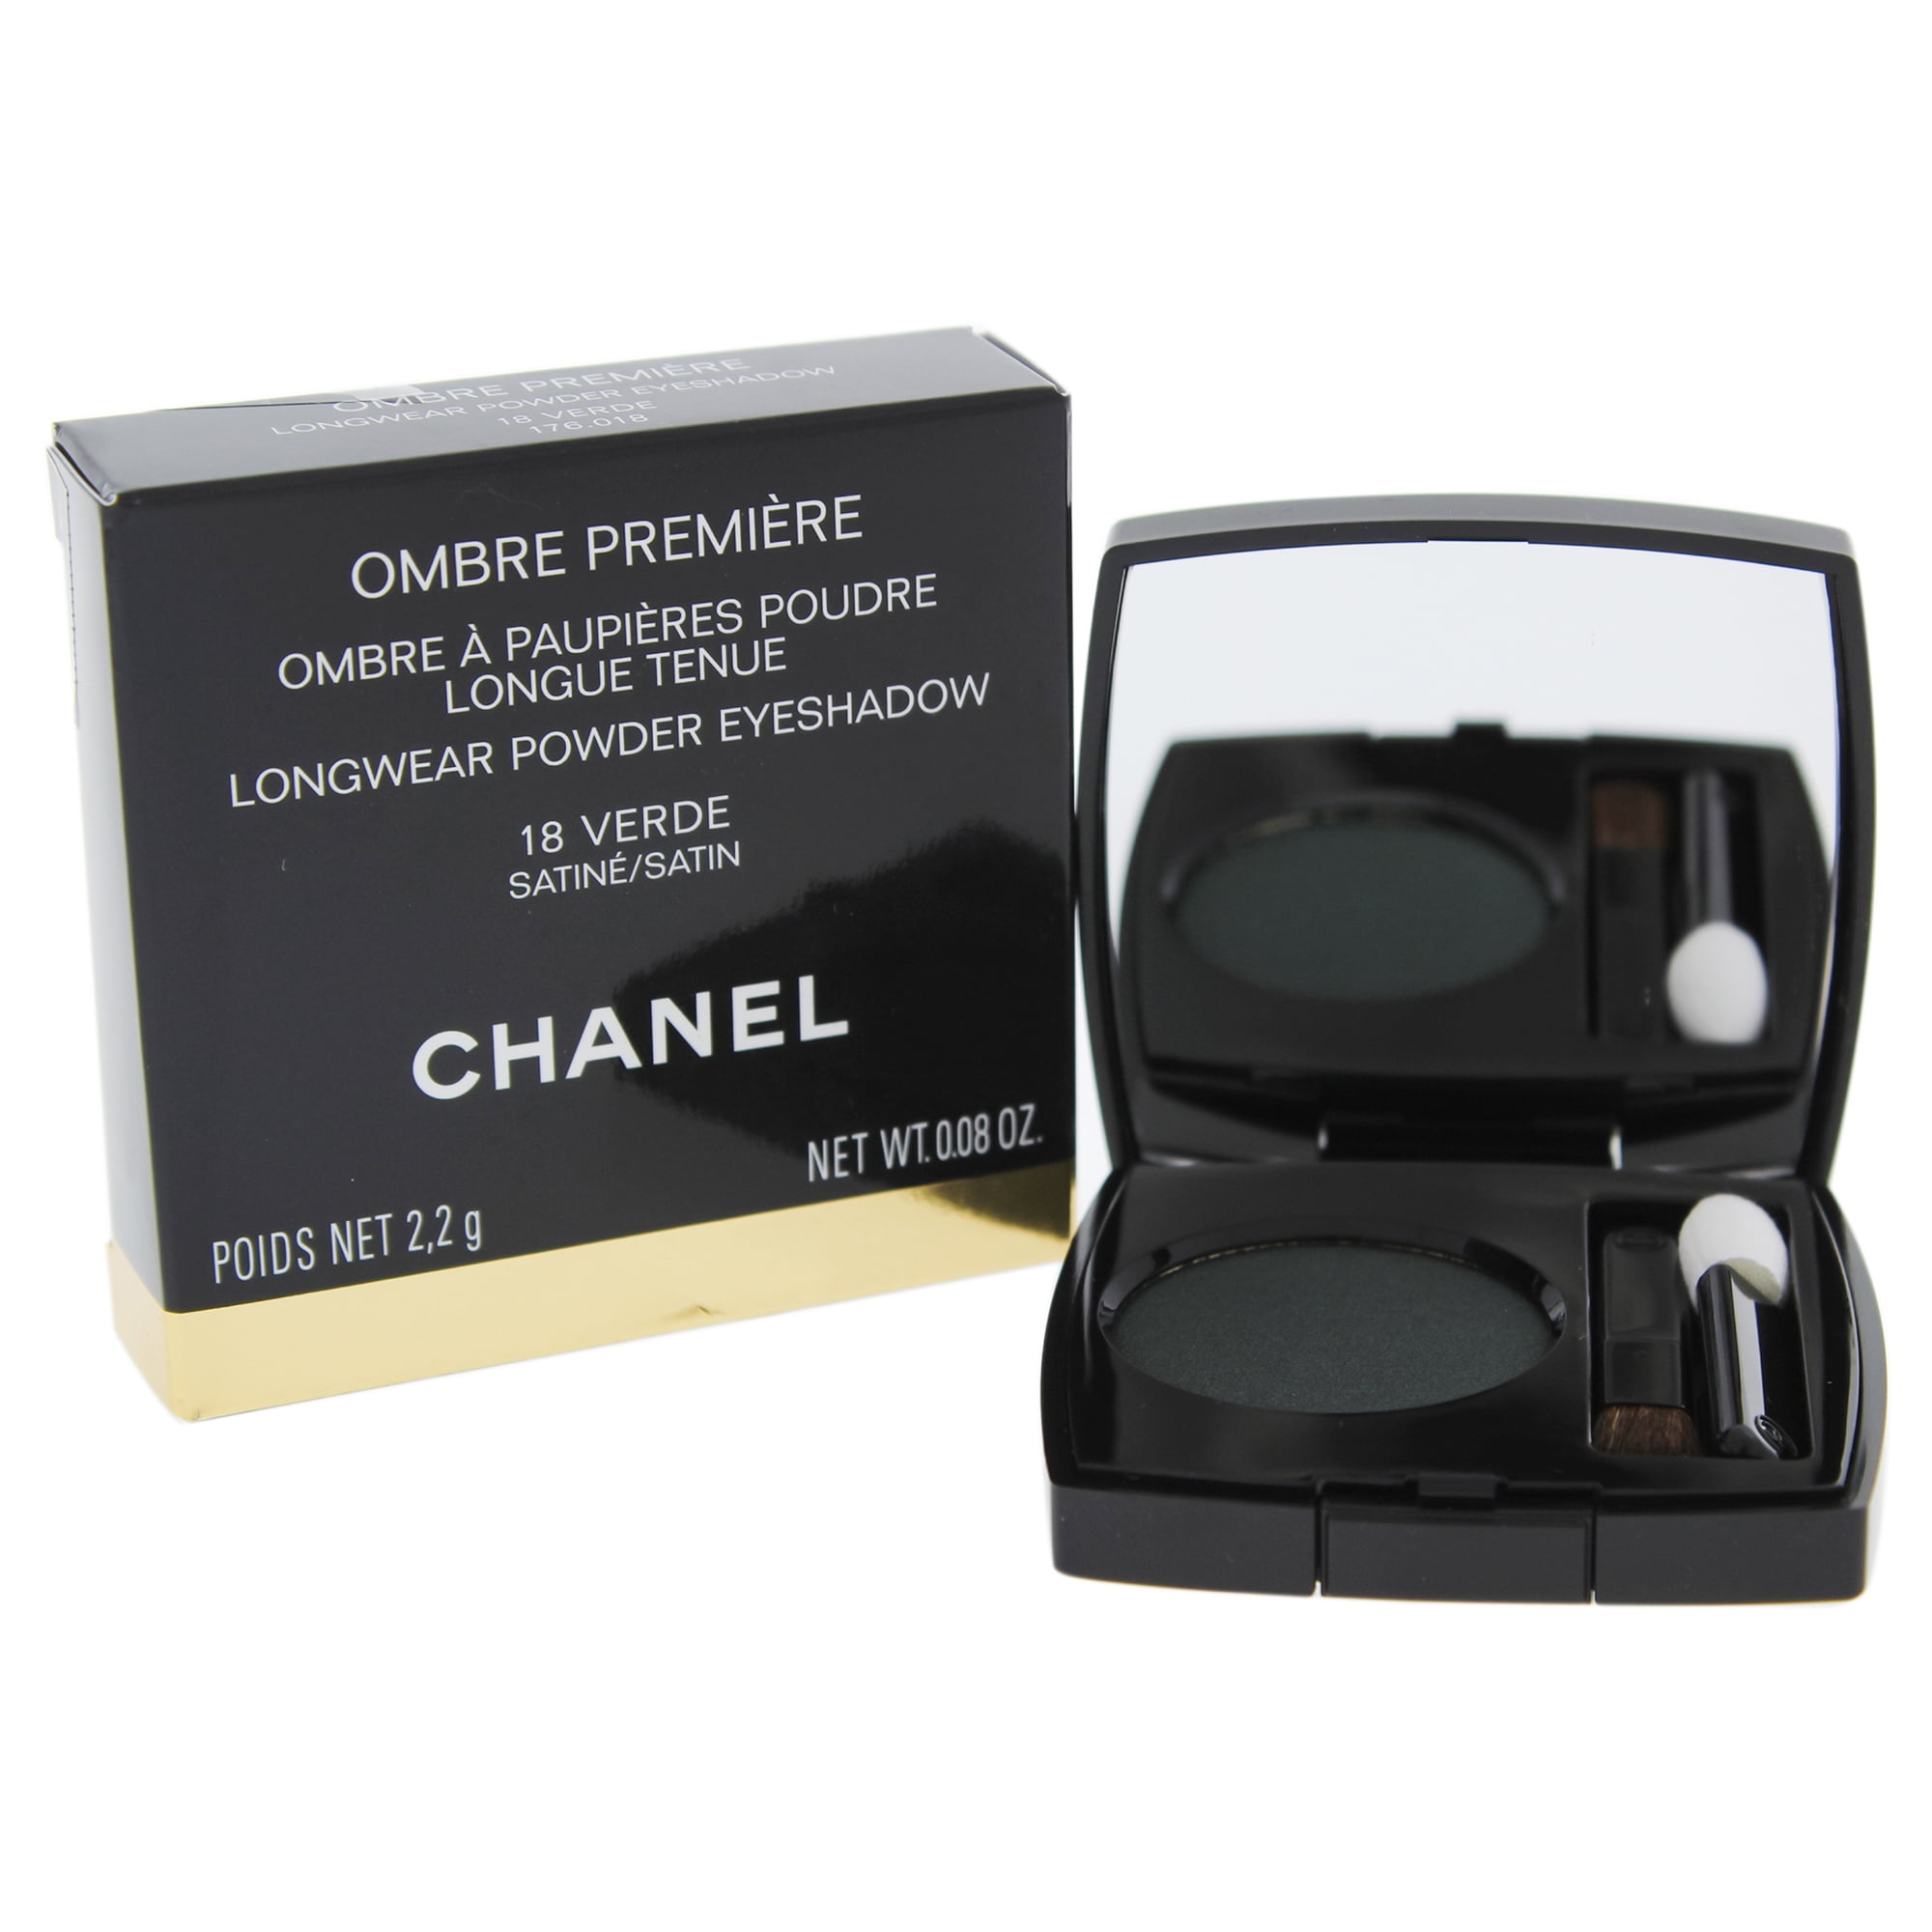 Chanel Ombre Premiere Longwear Powder Eyeshadow - 14 Talpa 0.08 oz Eye  Shadow 